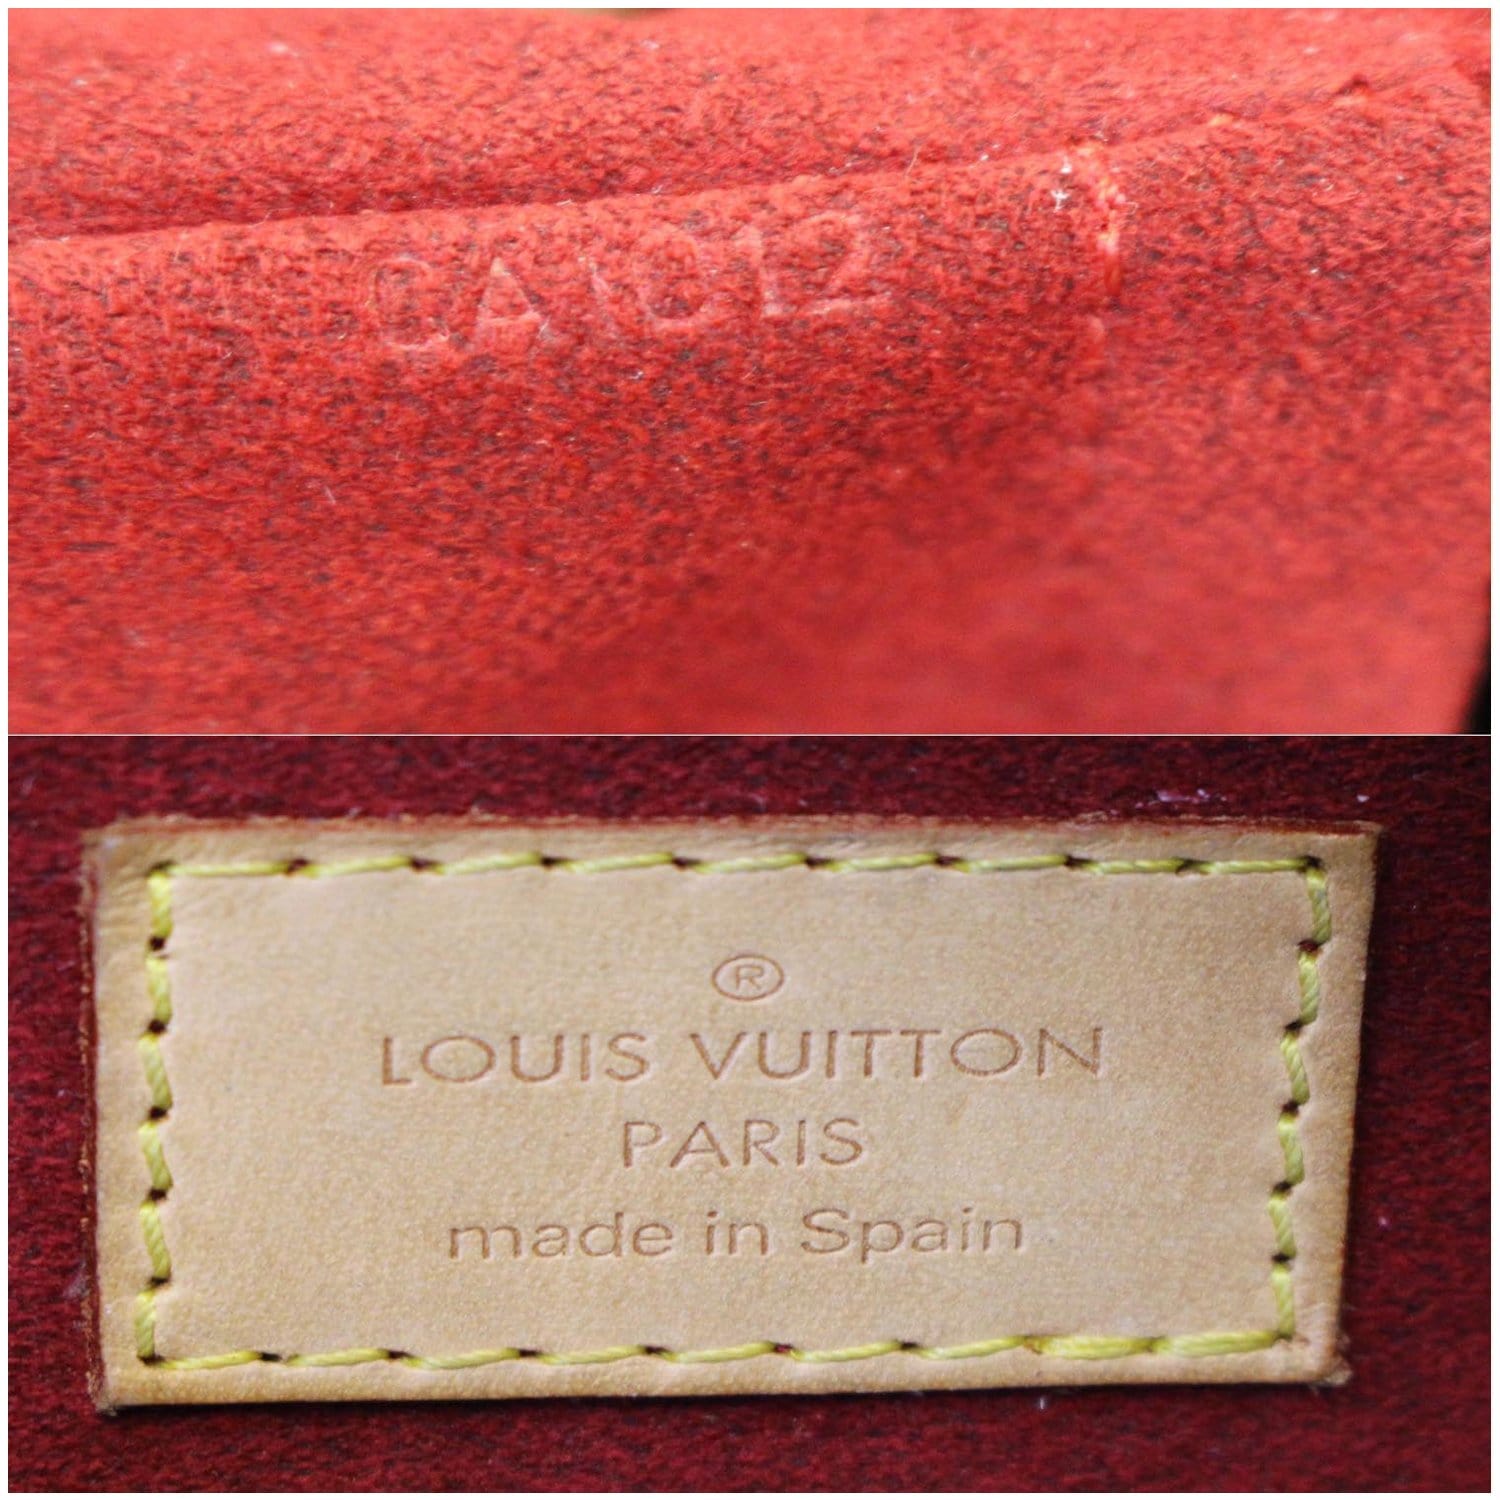 Authenticated used Louis Vuitton Louis Vuitton Croissant GM Monogram Shoulder Bag Brown Ladies, Adult Unisex, Size: (HxWxD): 32cm x 37cm x 4cm / 12.59